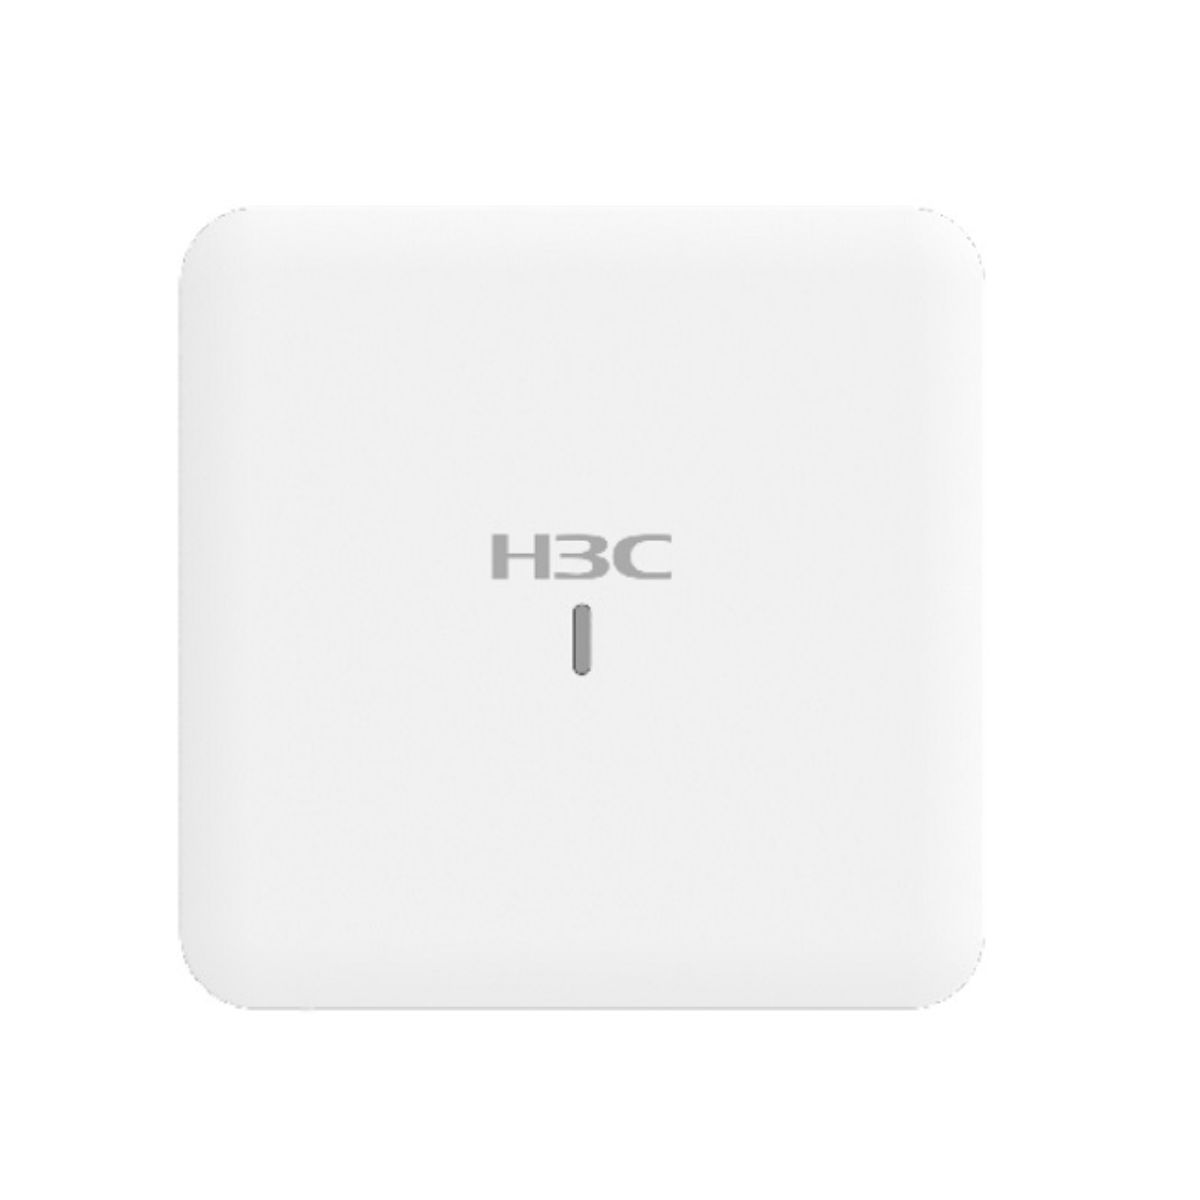 Bộ phát wifi 6 trong nhà H3C WA6120  tốc độ 1.775Gbps, kết nối đồng thời 100 người dùng, 8 SSID